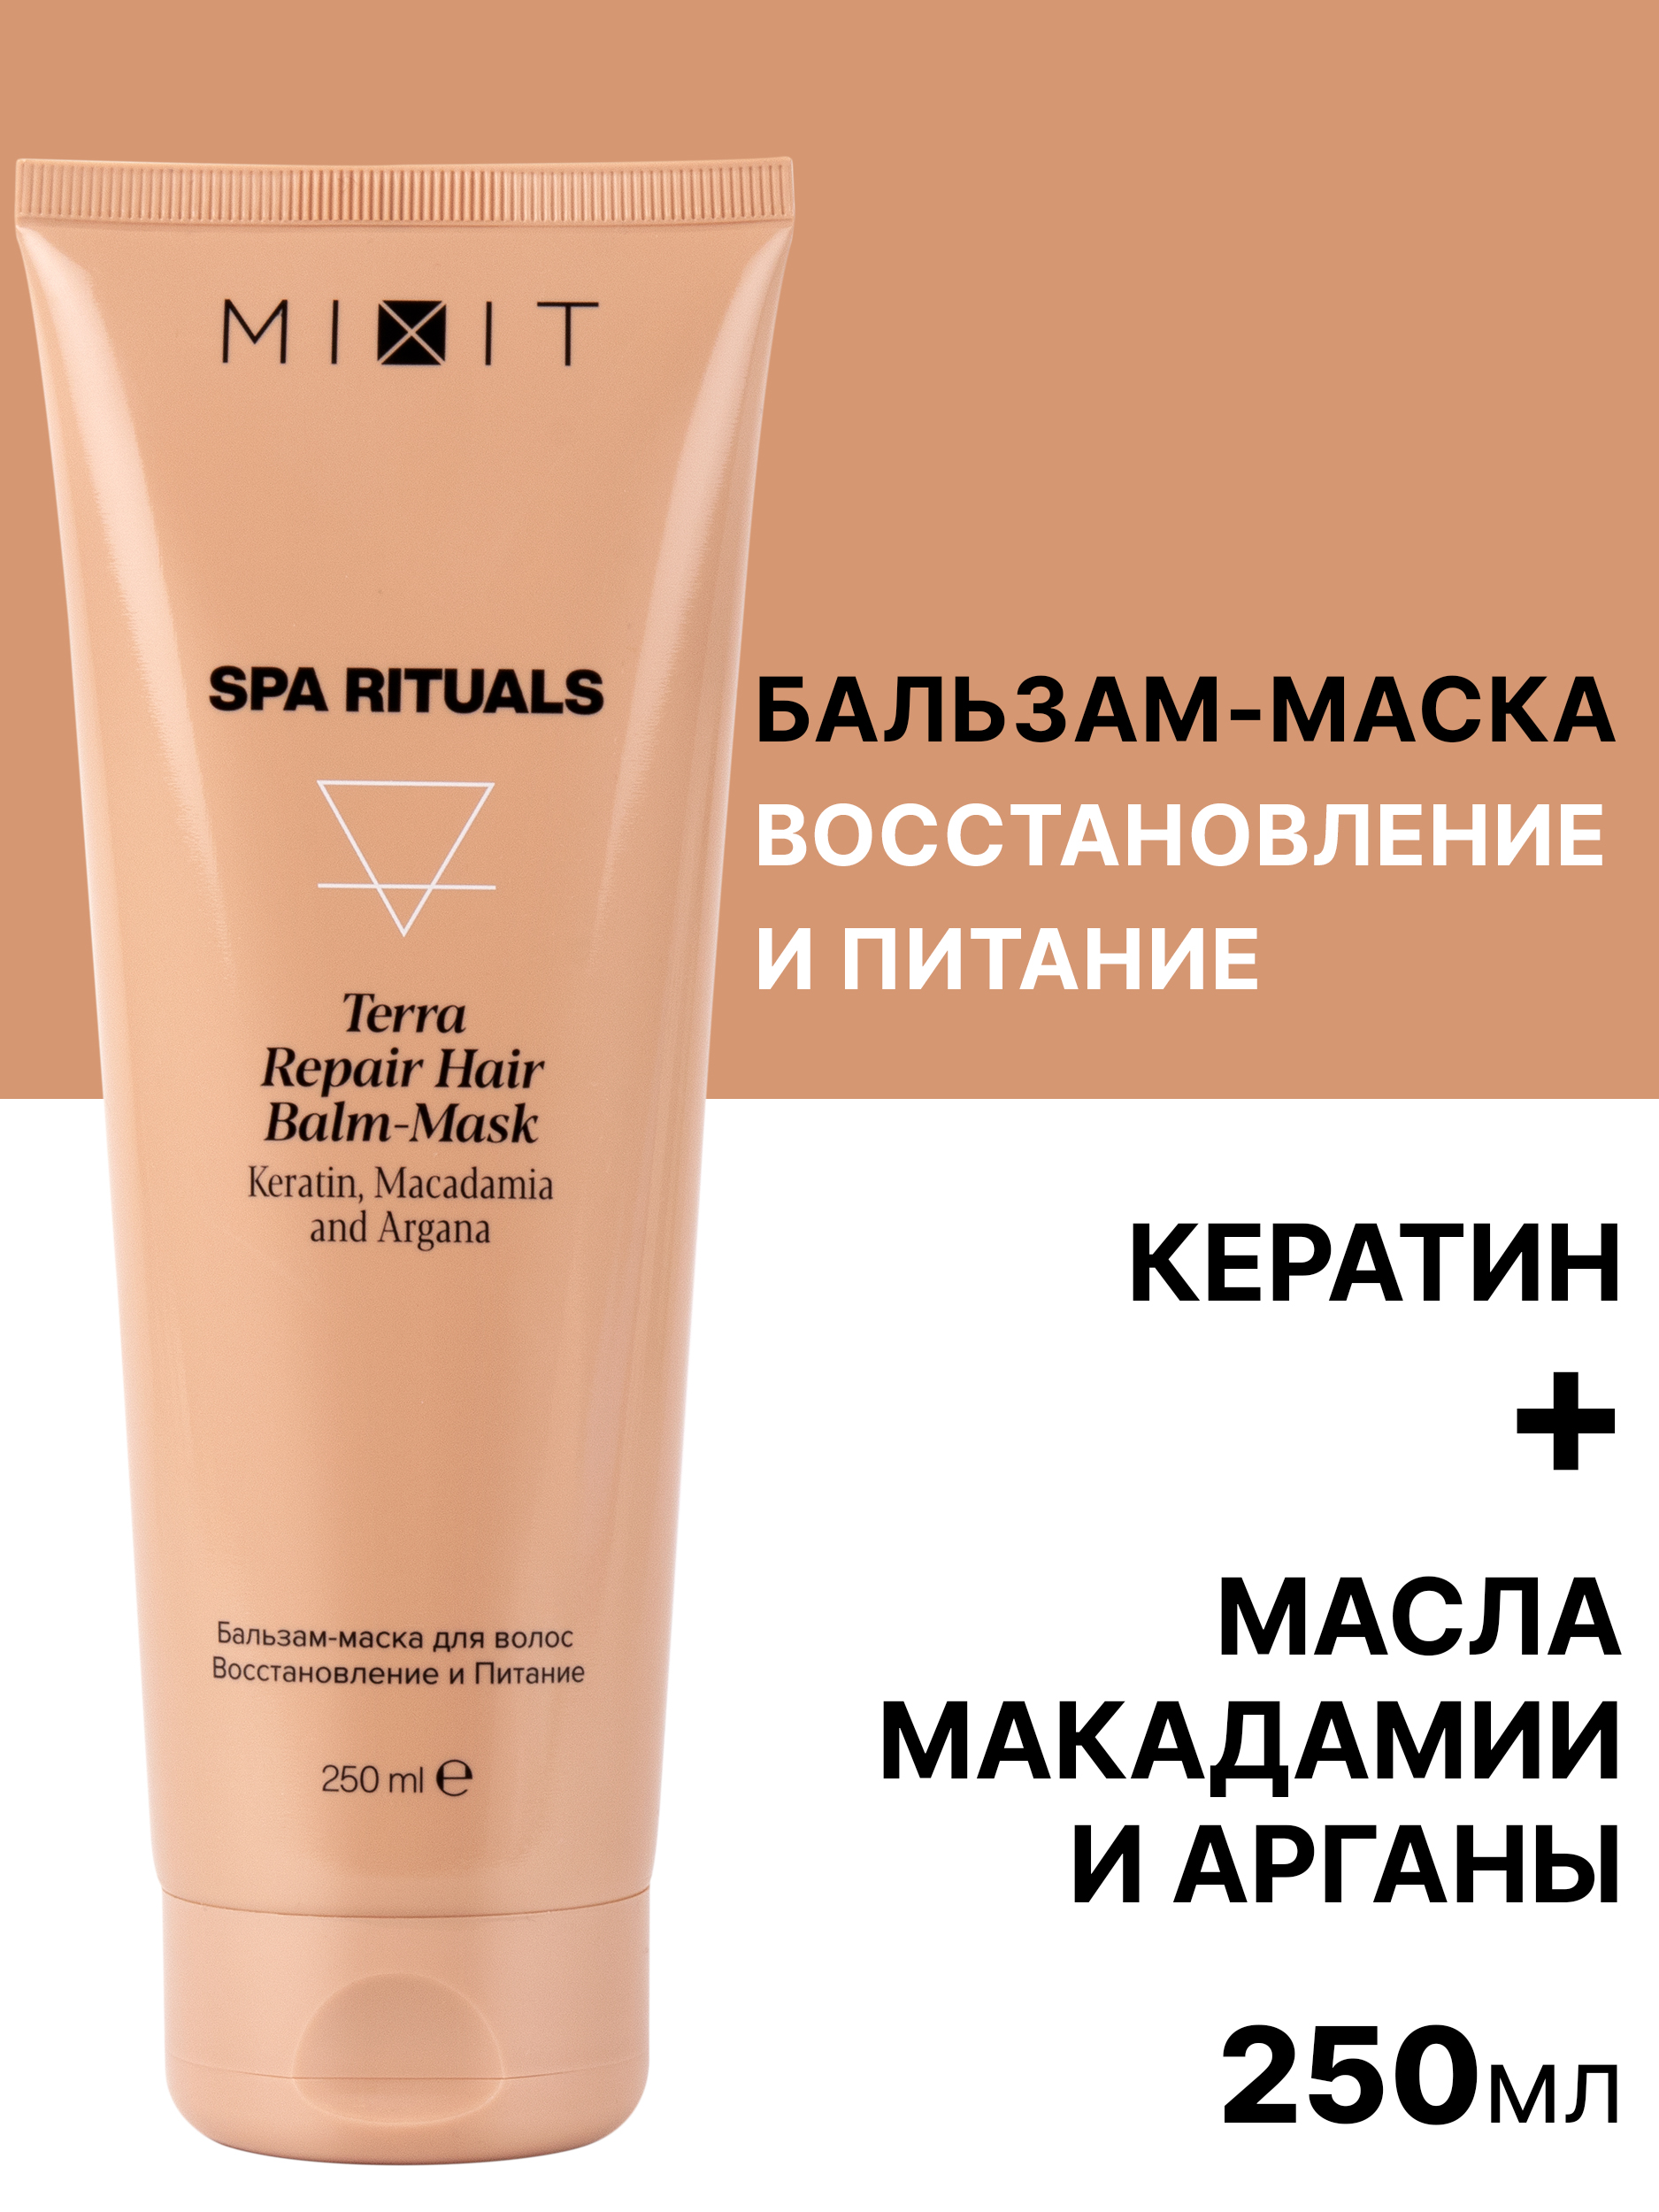 Бальзам-маска для волос Mixit Spa Rituals Terra восстановление и питание 250 мл бальзам для губ крымские сказки шоколадка с натуральным конкретом ванили 7 г